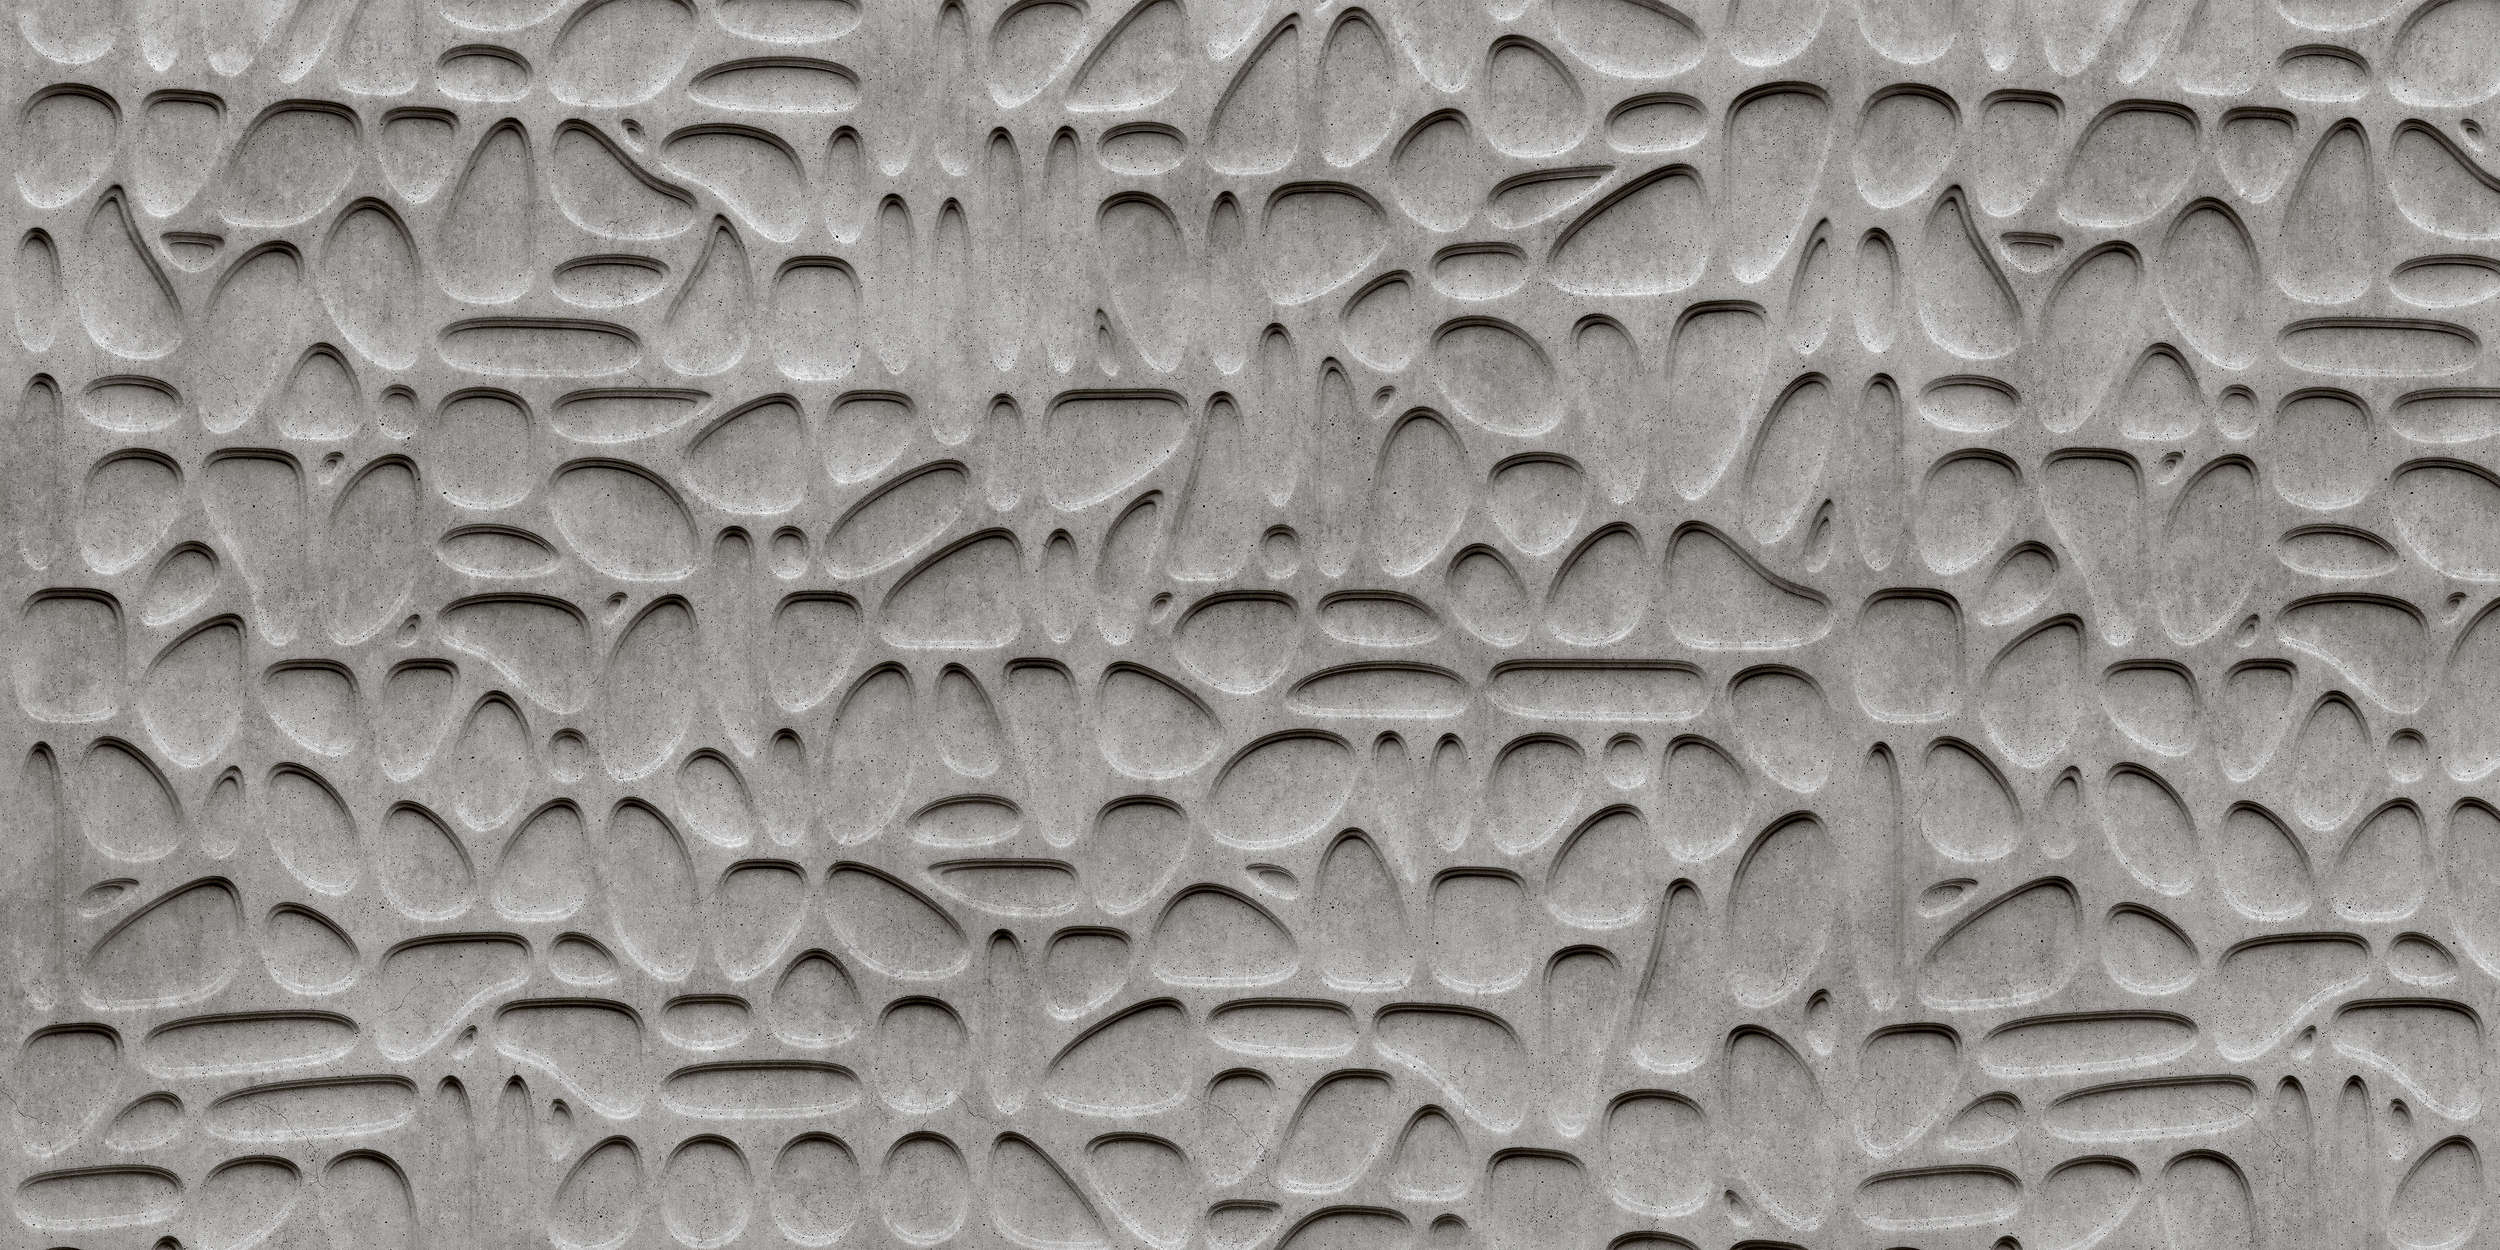             Maze 1 - Papier peint 3D cool bulles d'air en béton - gris, noir | nacré intissé lisse
        